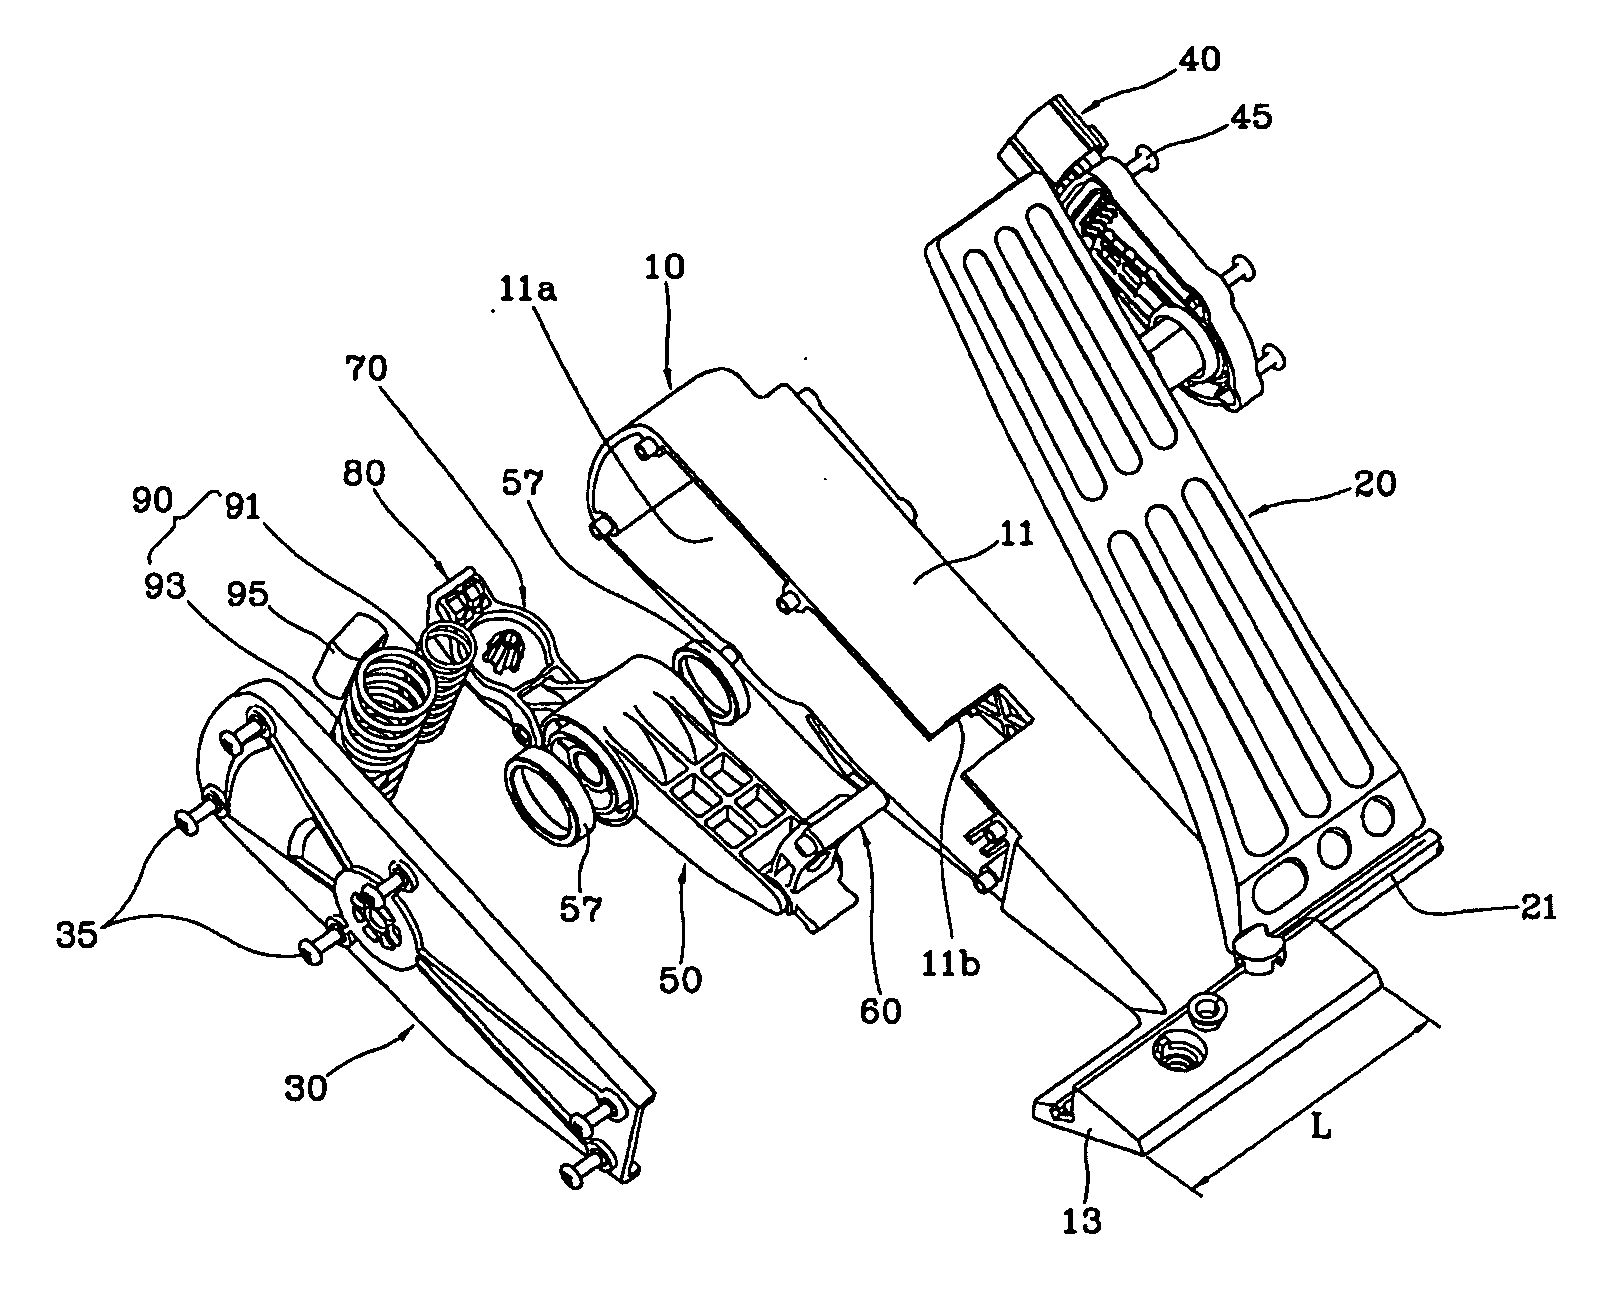 Electronic organ type accelarator pedal